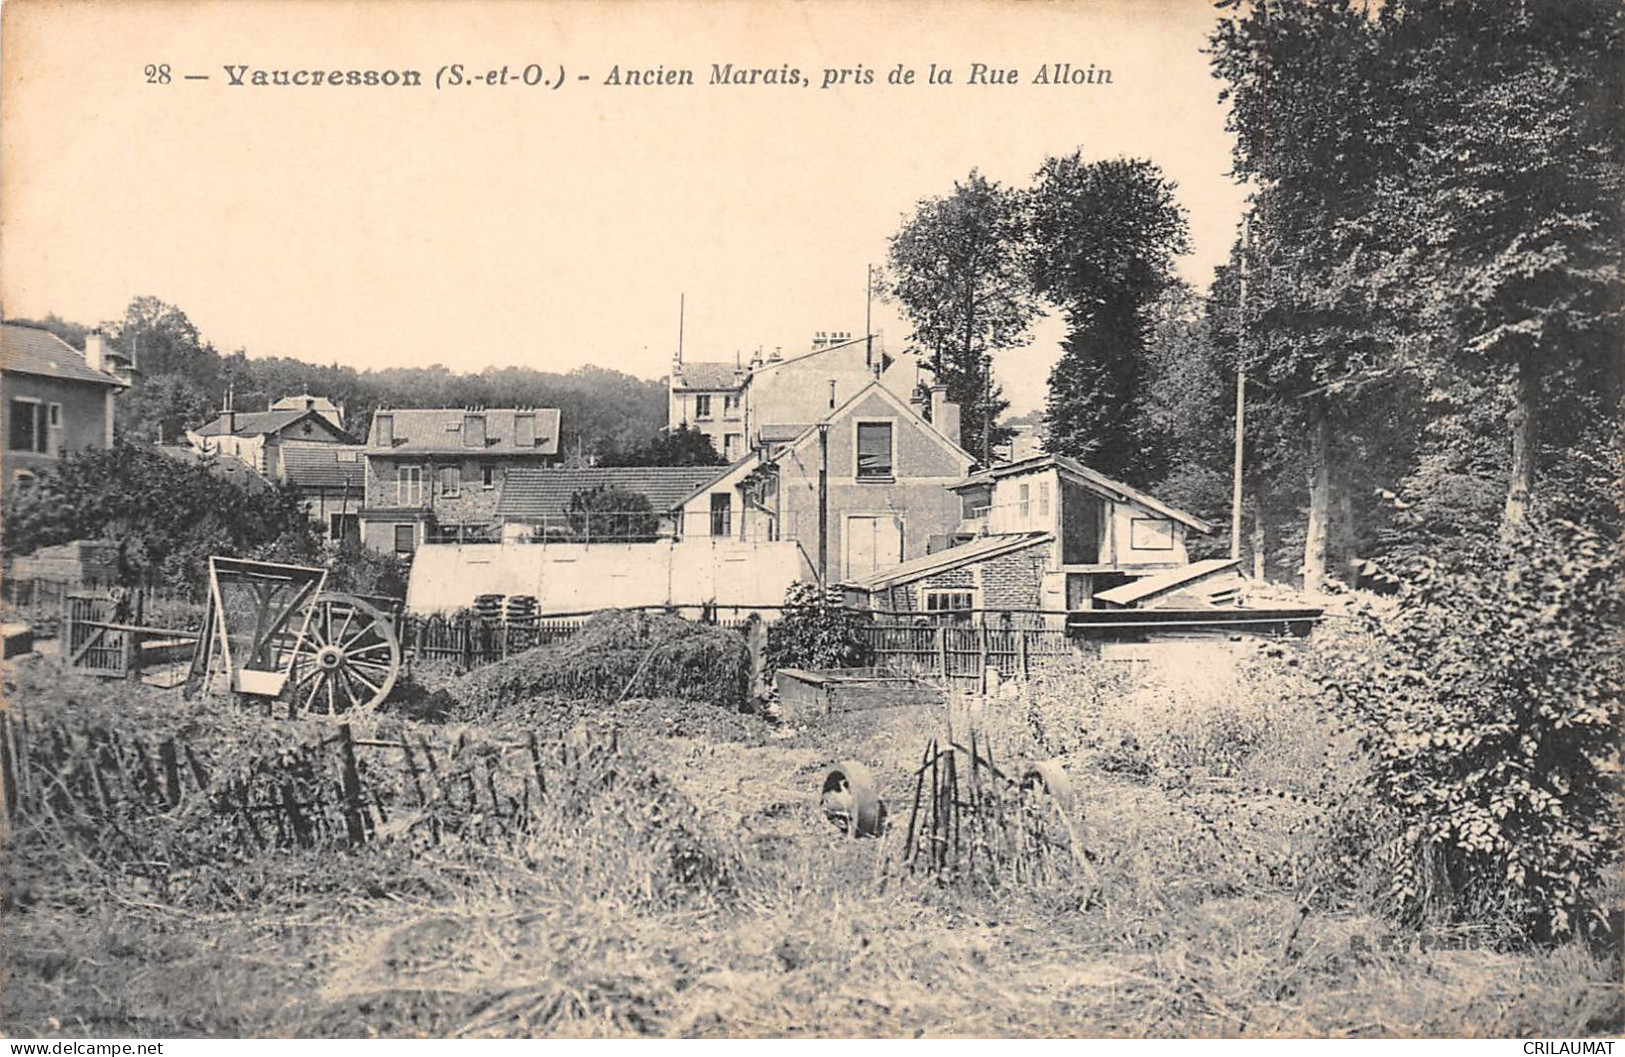 78-VAUCRESSON-Ancien Marais- Pris De La Rue Alloin-N 6002-A/0195 - Vaucresson